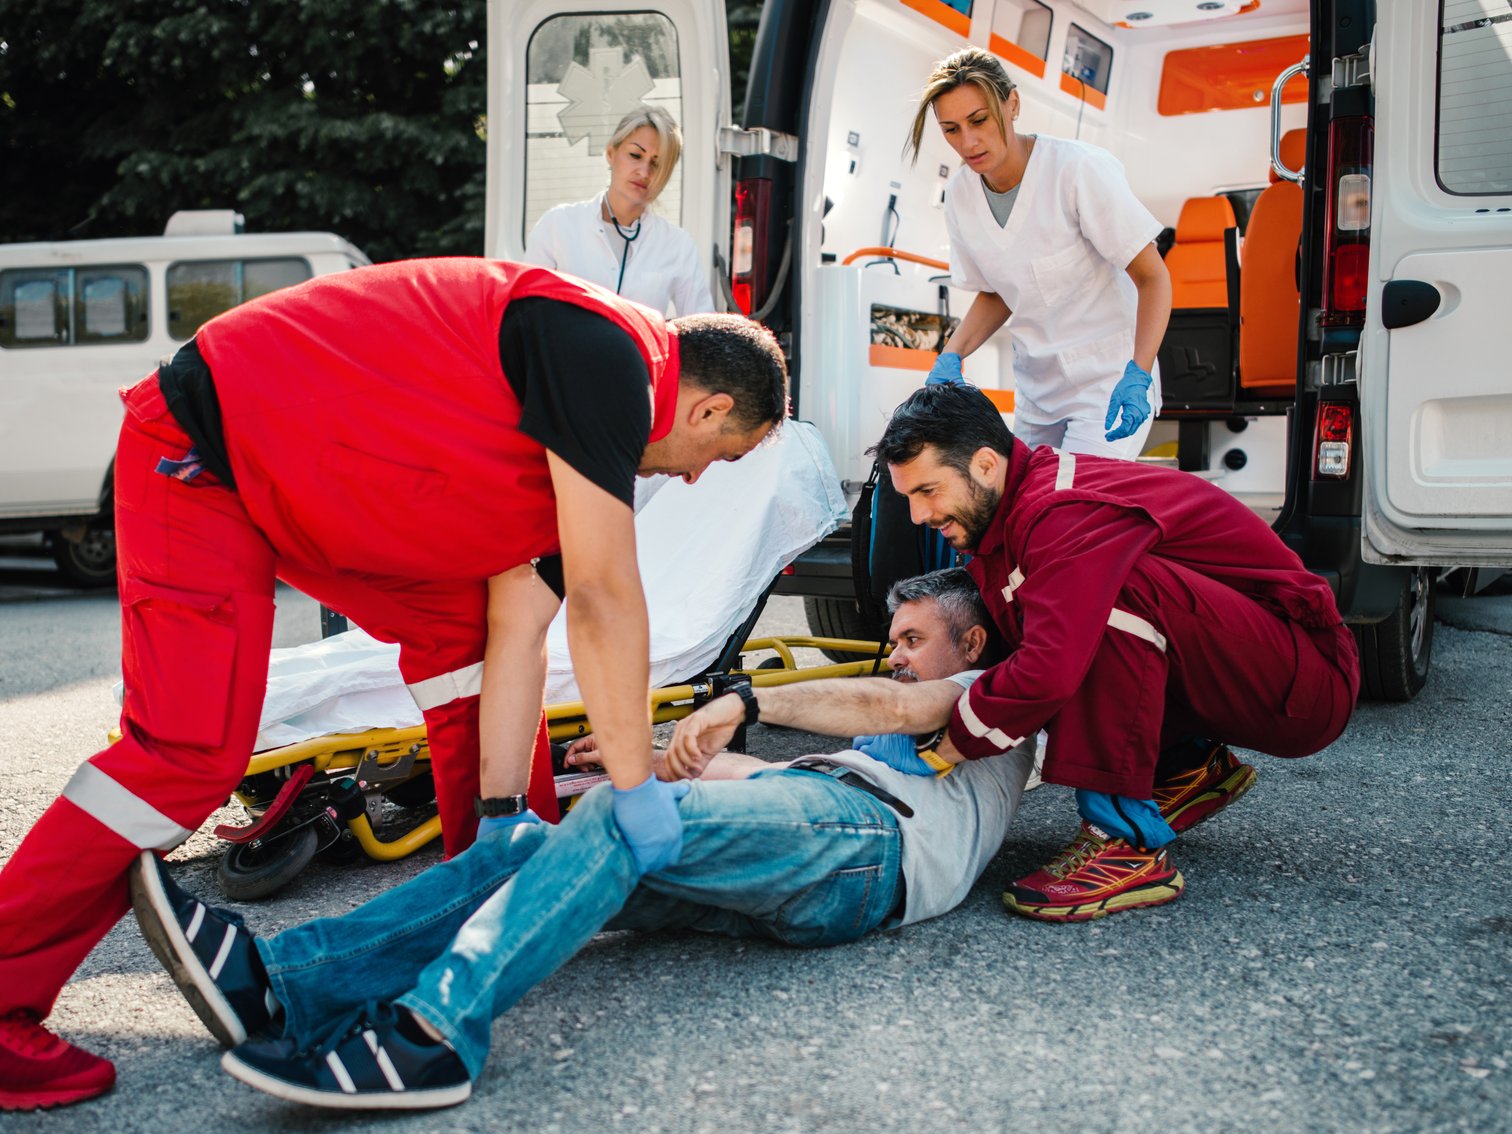 Medical emergency team helping injured mature man